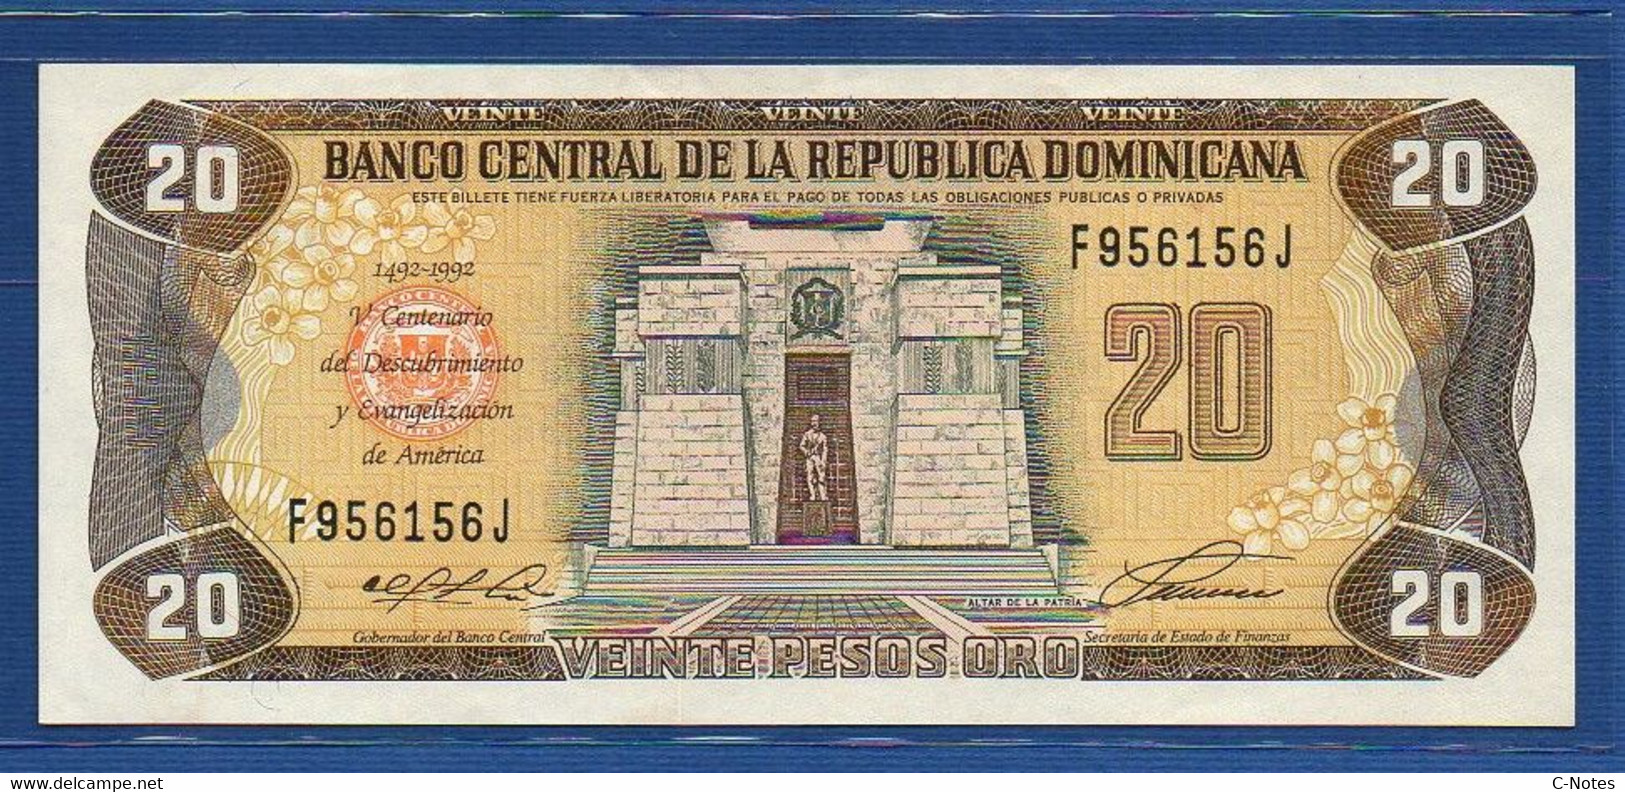 DOMINICAN REPUBLIC - P.139 – 20 Pesos Oro 1992 AUNC, Serie F 956156 J Commemorative Issue - Repubblica Dominicana